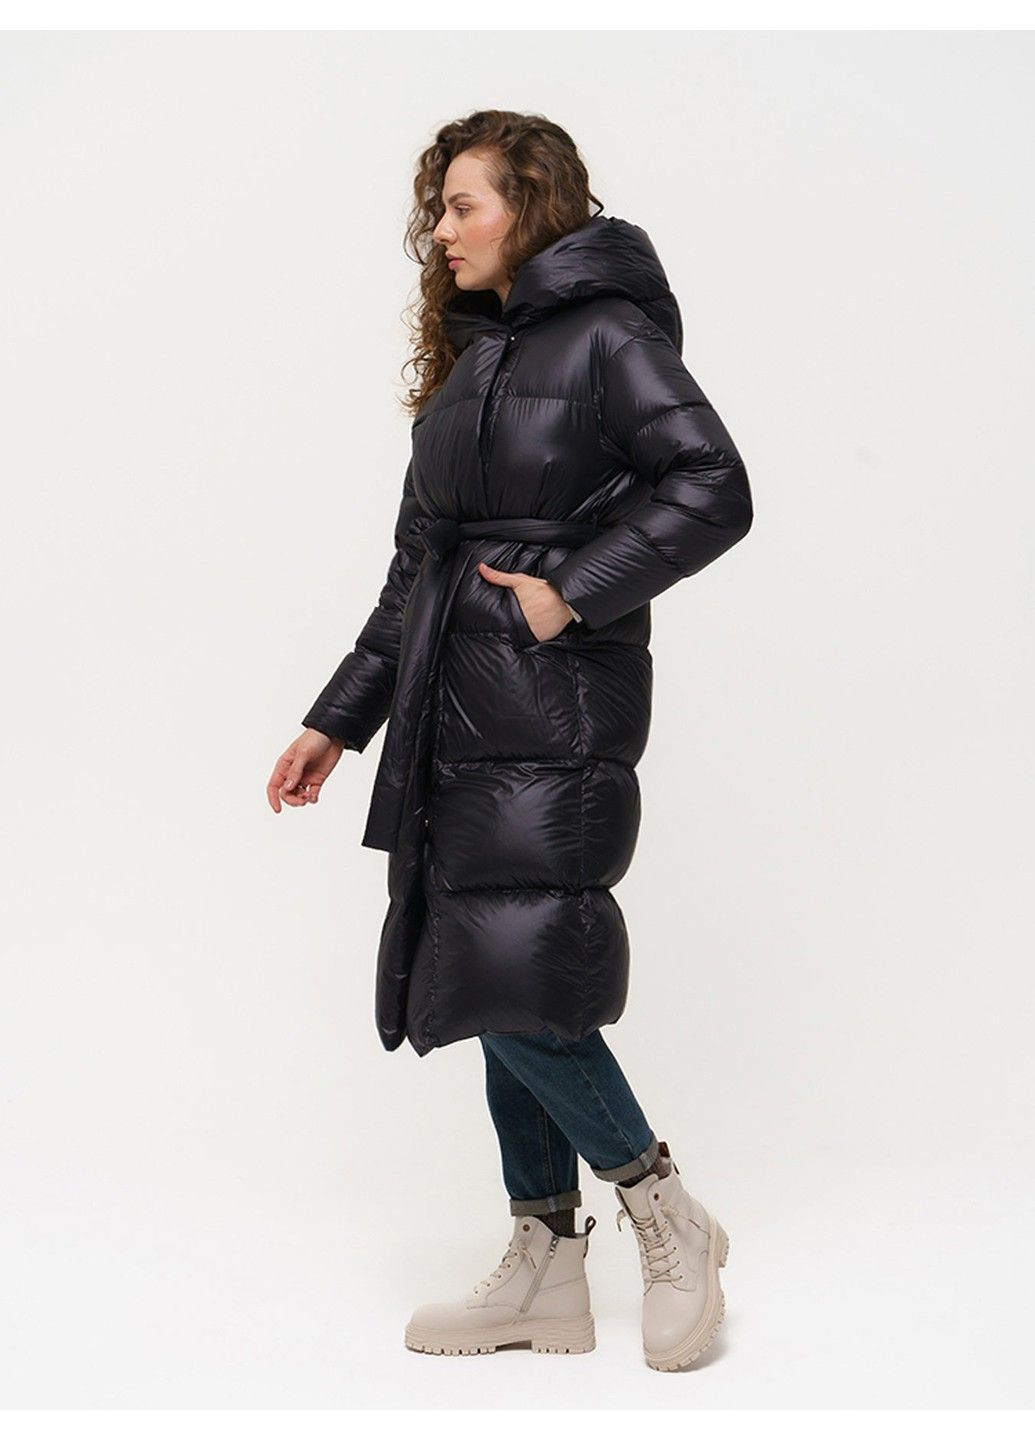 Черная зимняя пальто 21 - 18120 Vivilona